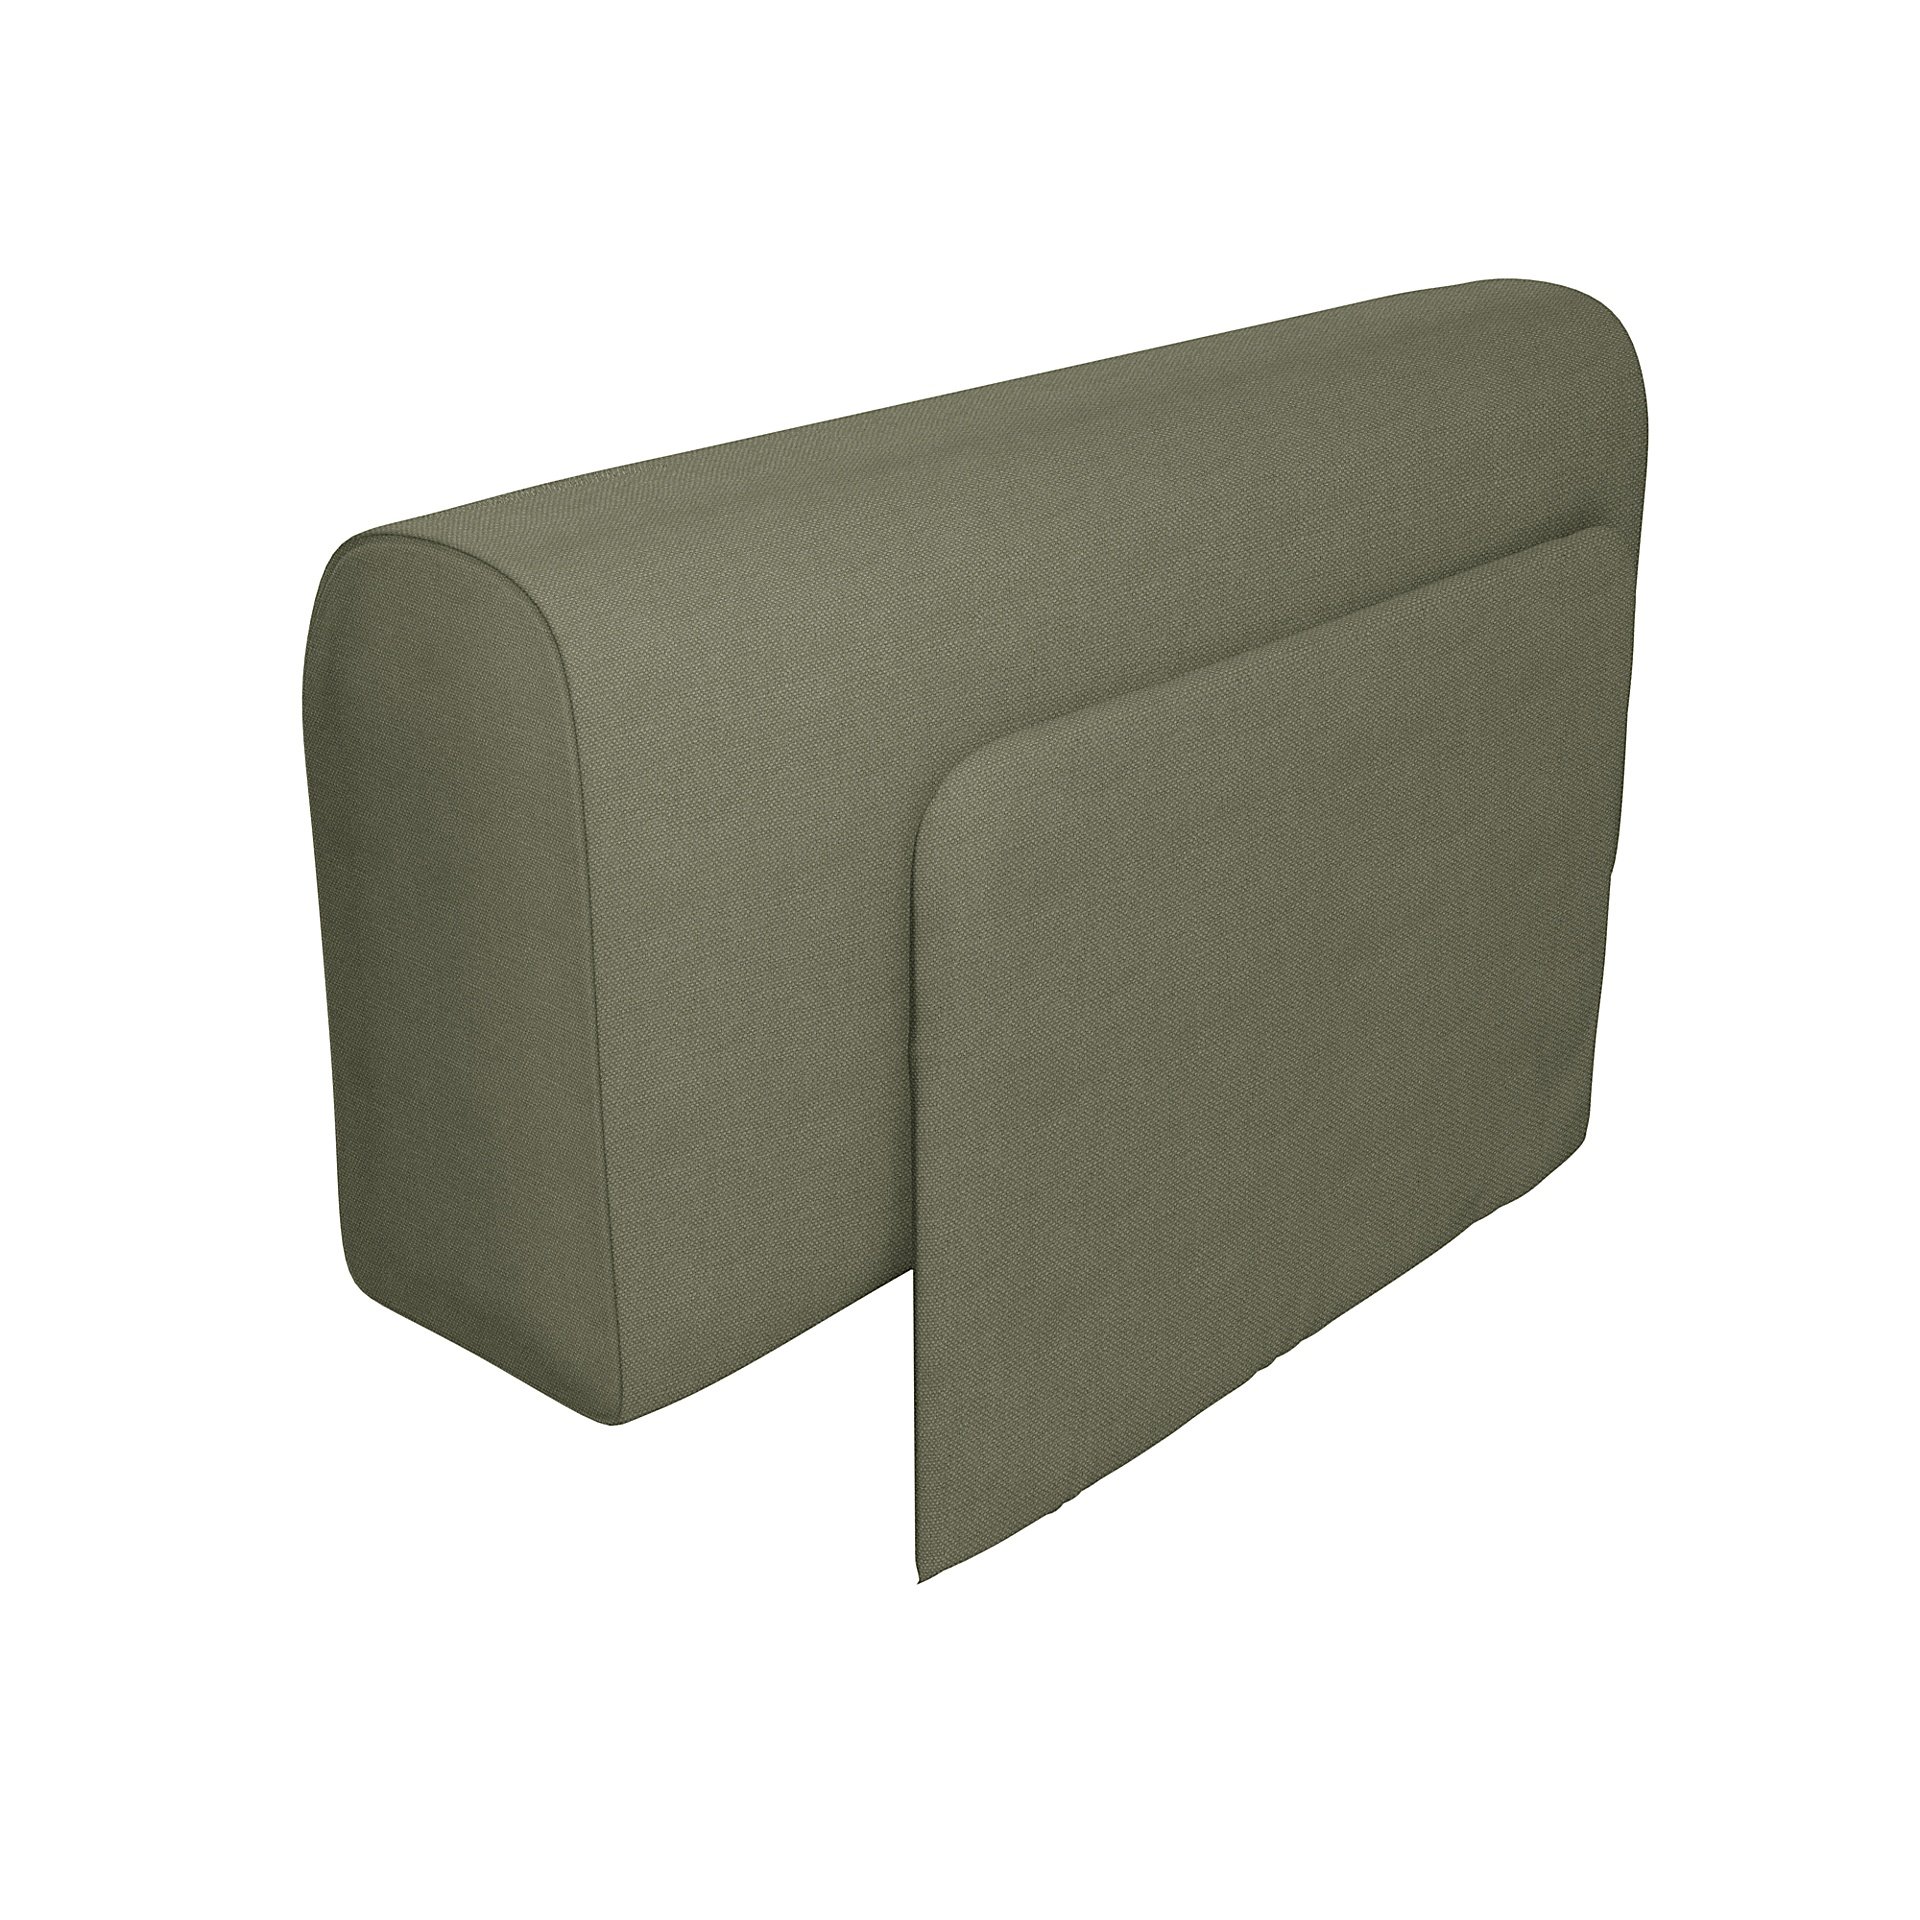 IKEA - Delaktig Armrest with Cushion Cover, Sage, Linen - Bemz